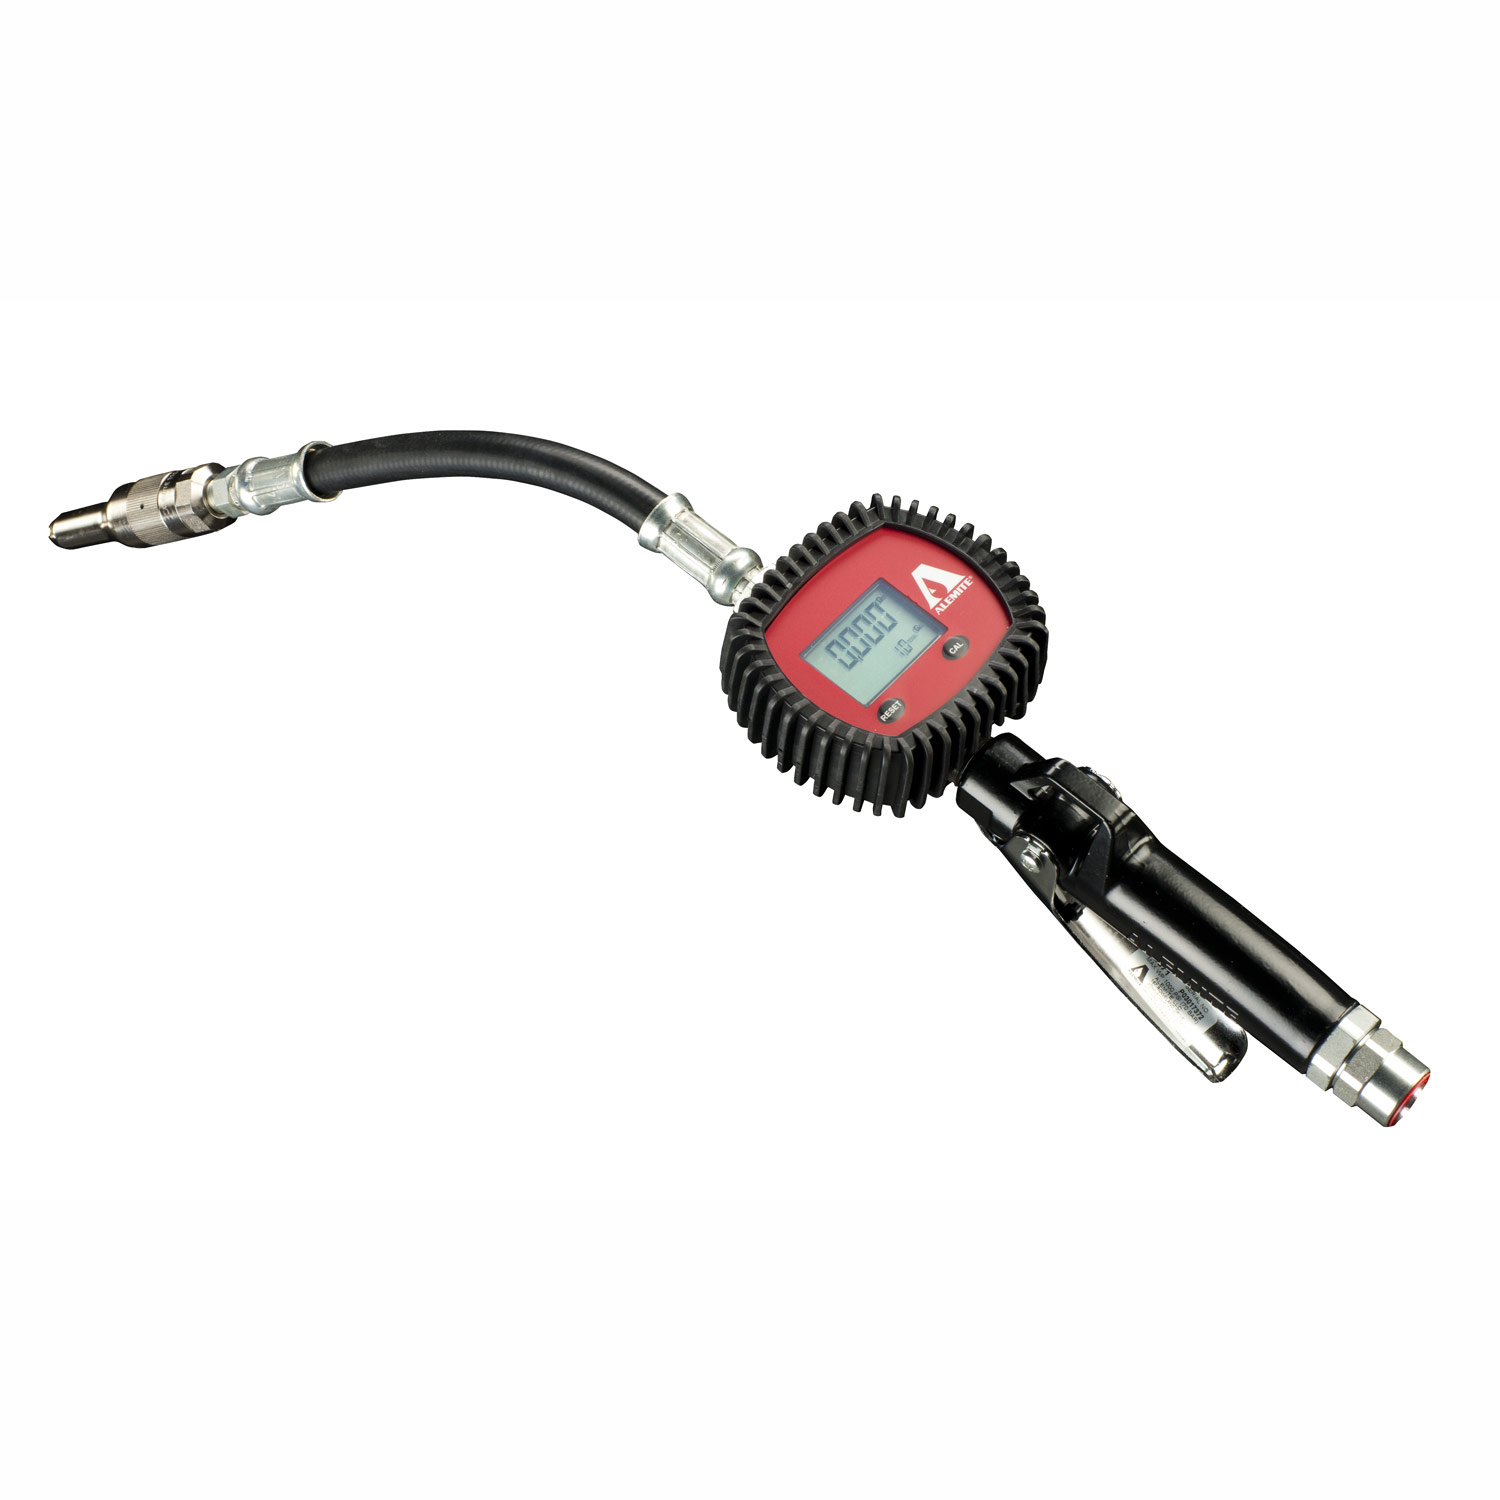 3671 — Alemite Electronic dispense handle, flex extension, auto tip